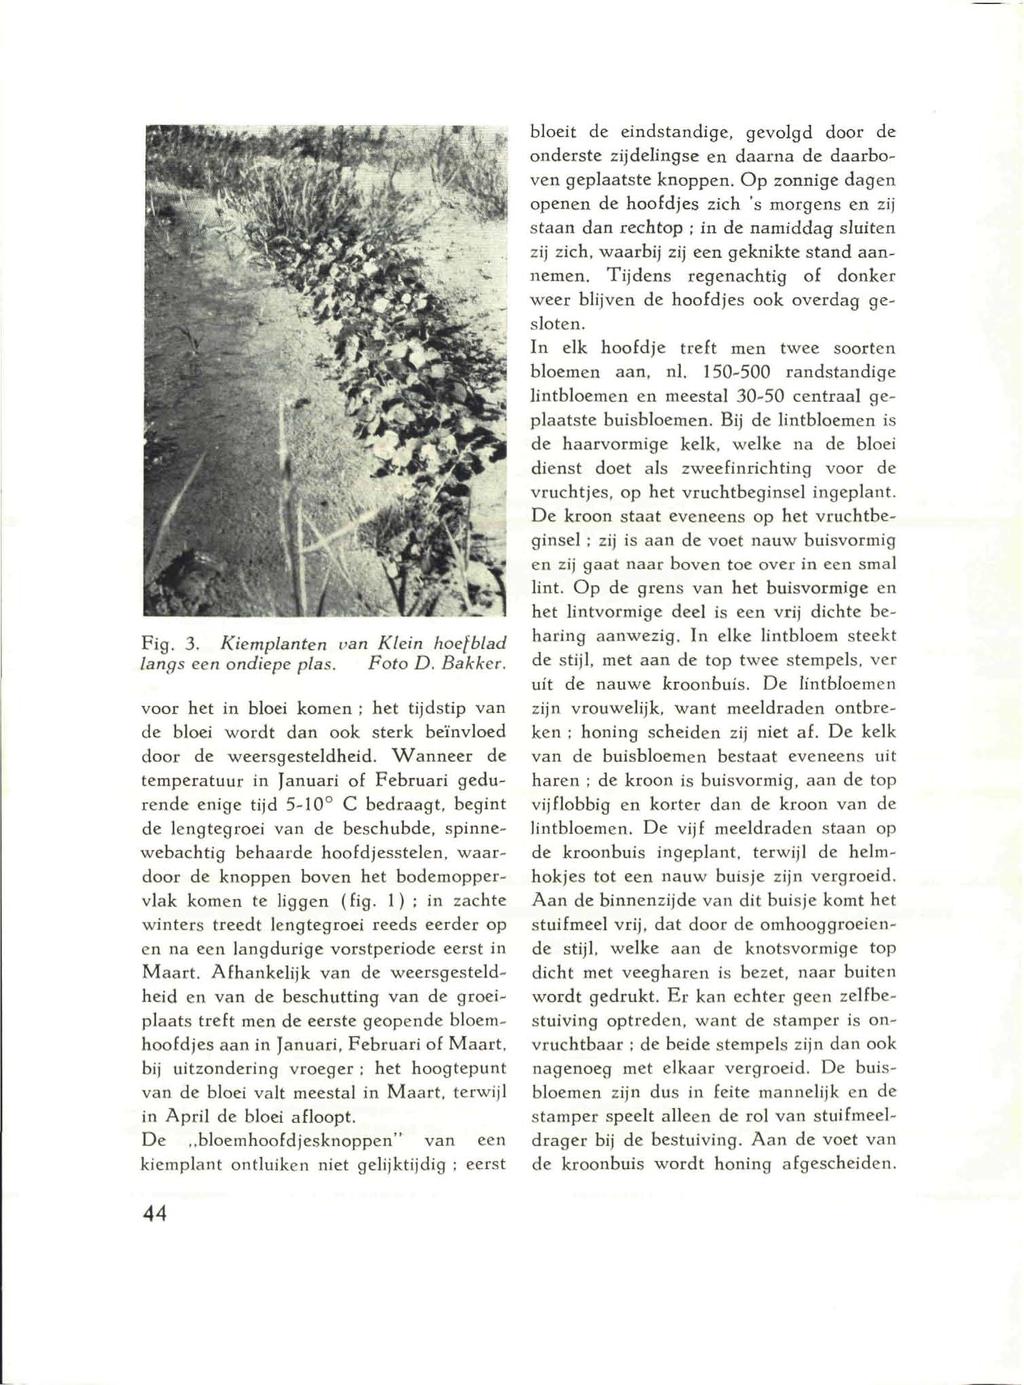 Fig. 3. Kiemplanten van Klein hoefblad langs een ondiepe plas. Foto D. Bakker. voor het in bloei komen ; het tijdstip van de bloei wordt dan ook sterk beïnvloed door de weersgesteldheid.